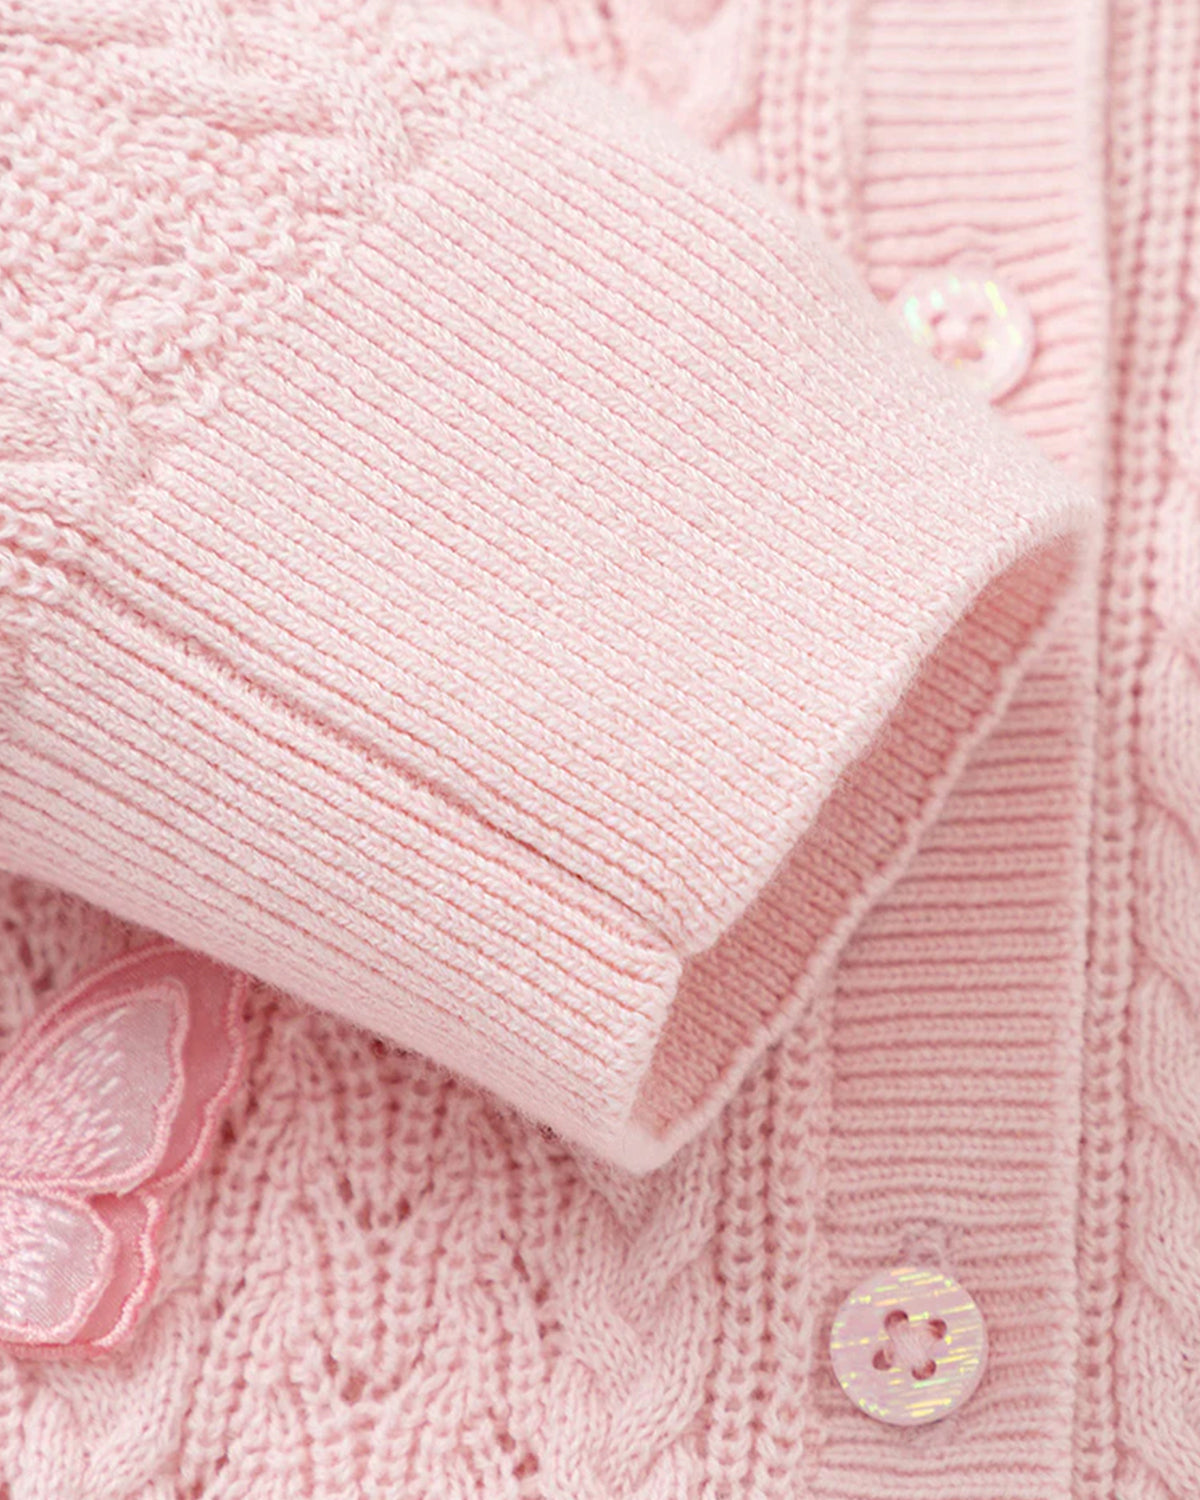 Balabala Girl Toddler Sweater